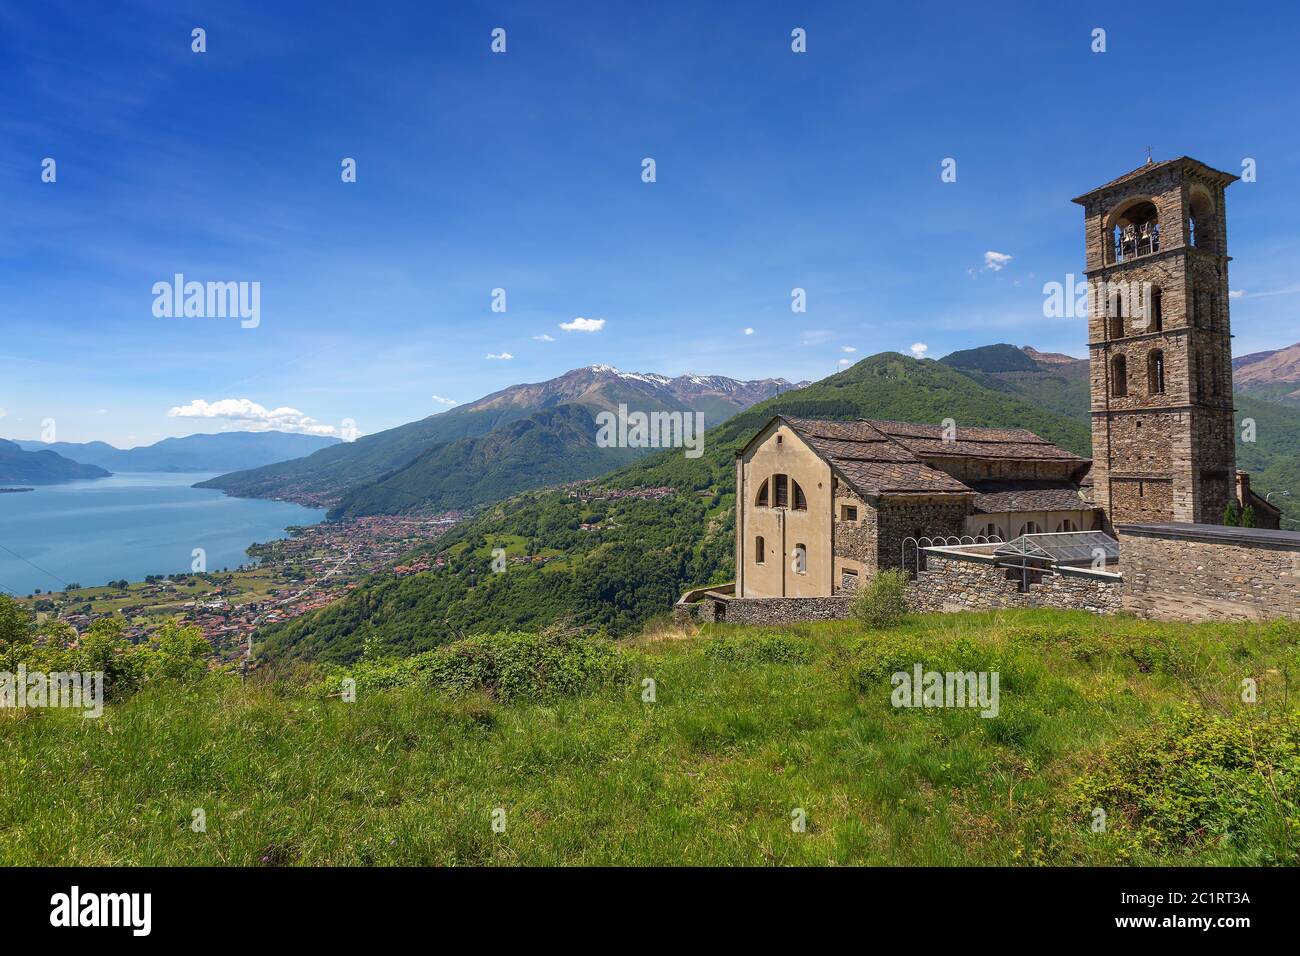 Vieille église près du lac de Côme en Italie Banque D'Images